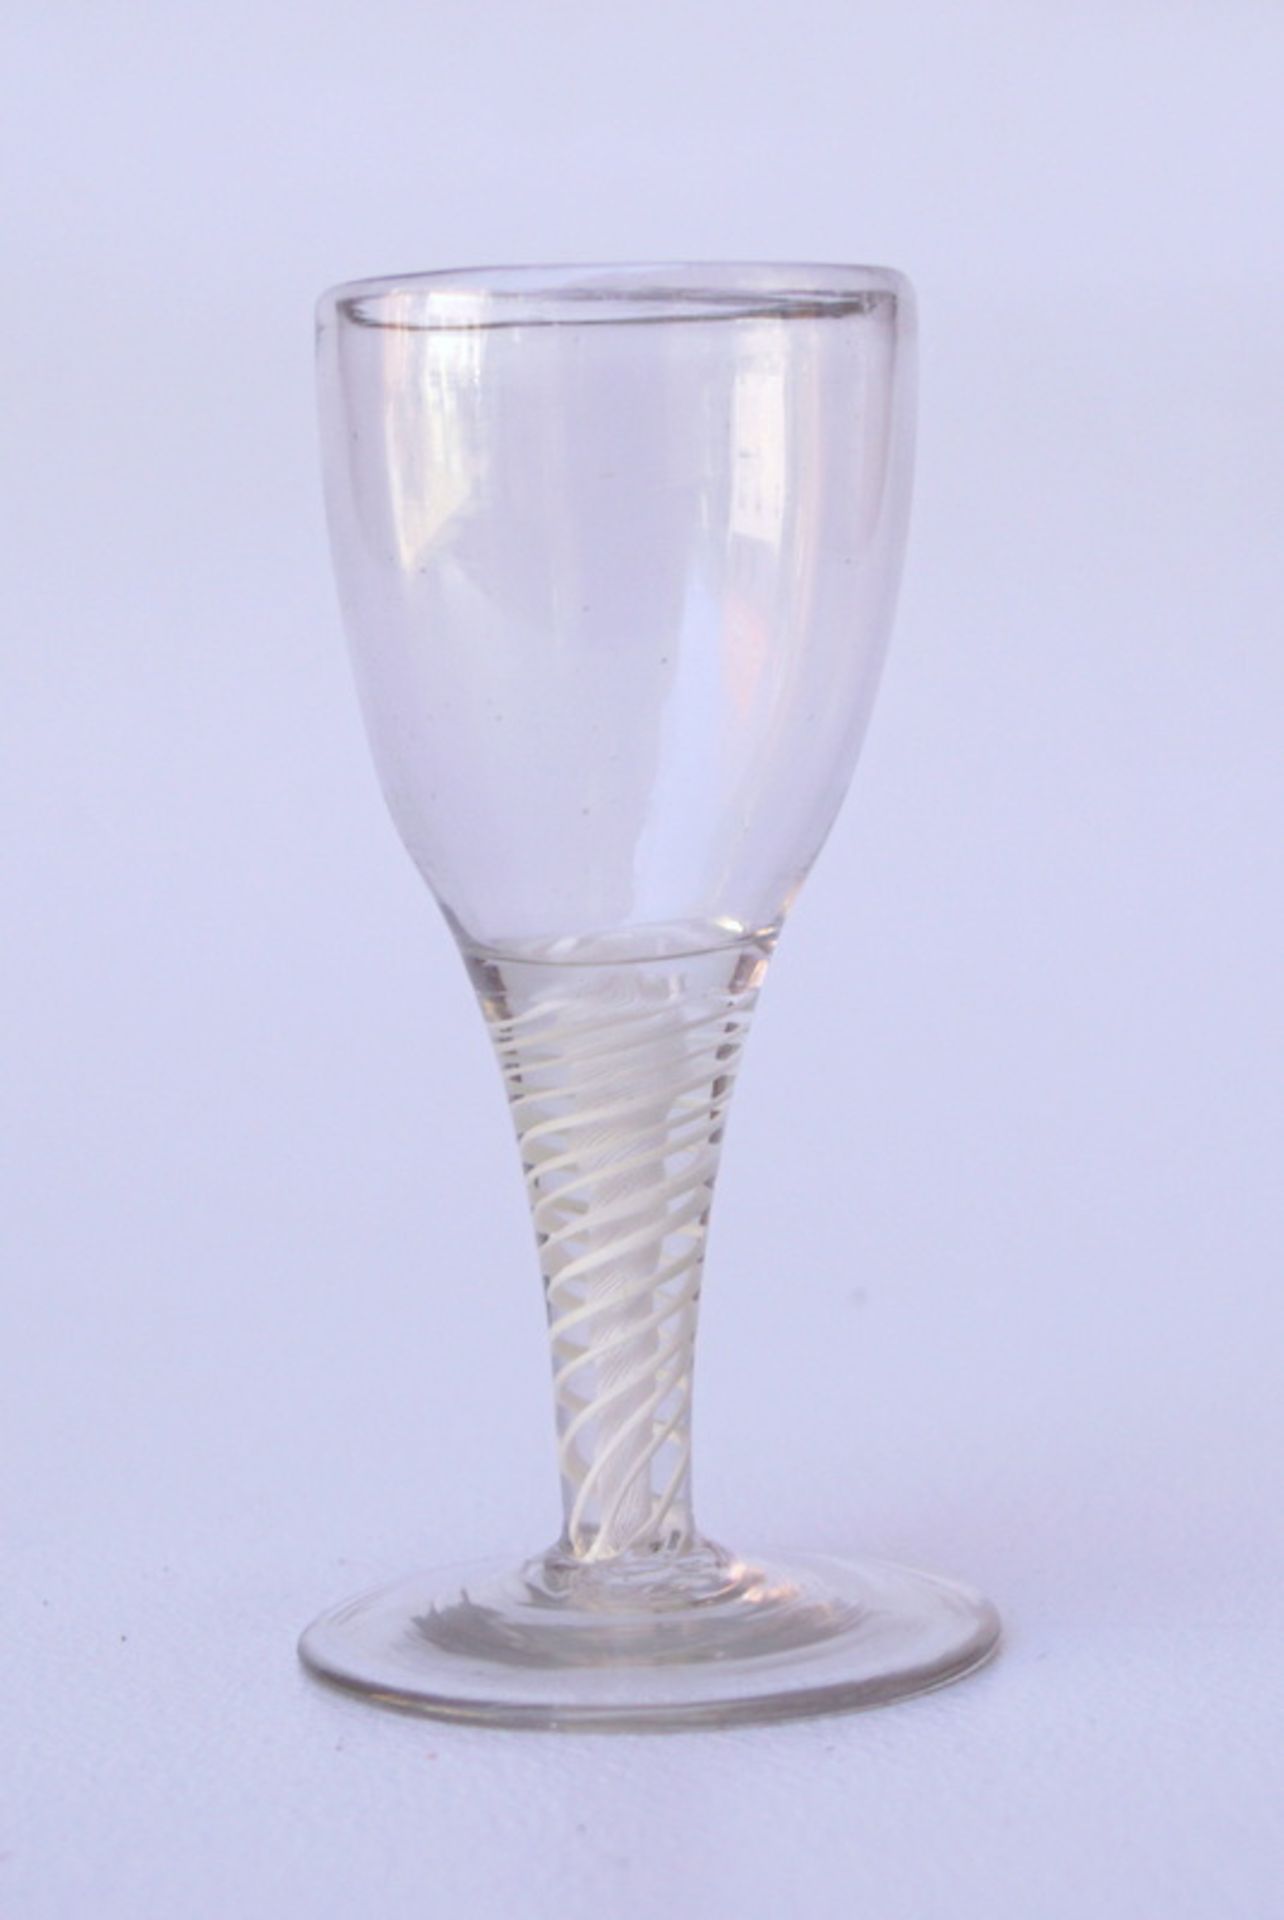 Sherryglas mit eingeschmolzenem Faden, England oder Niederlande, Ende 18.Jhd.Farbloses Glas, der